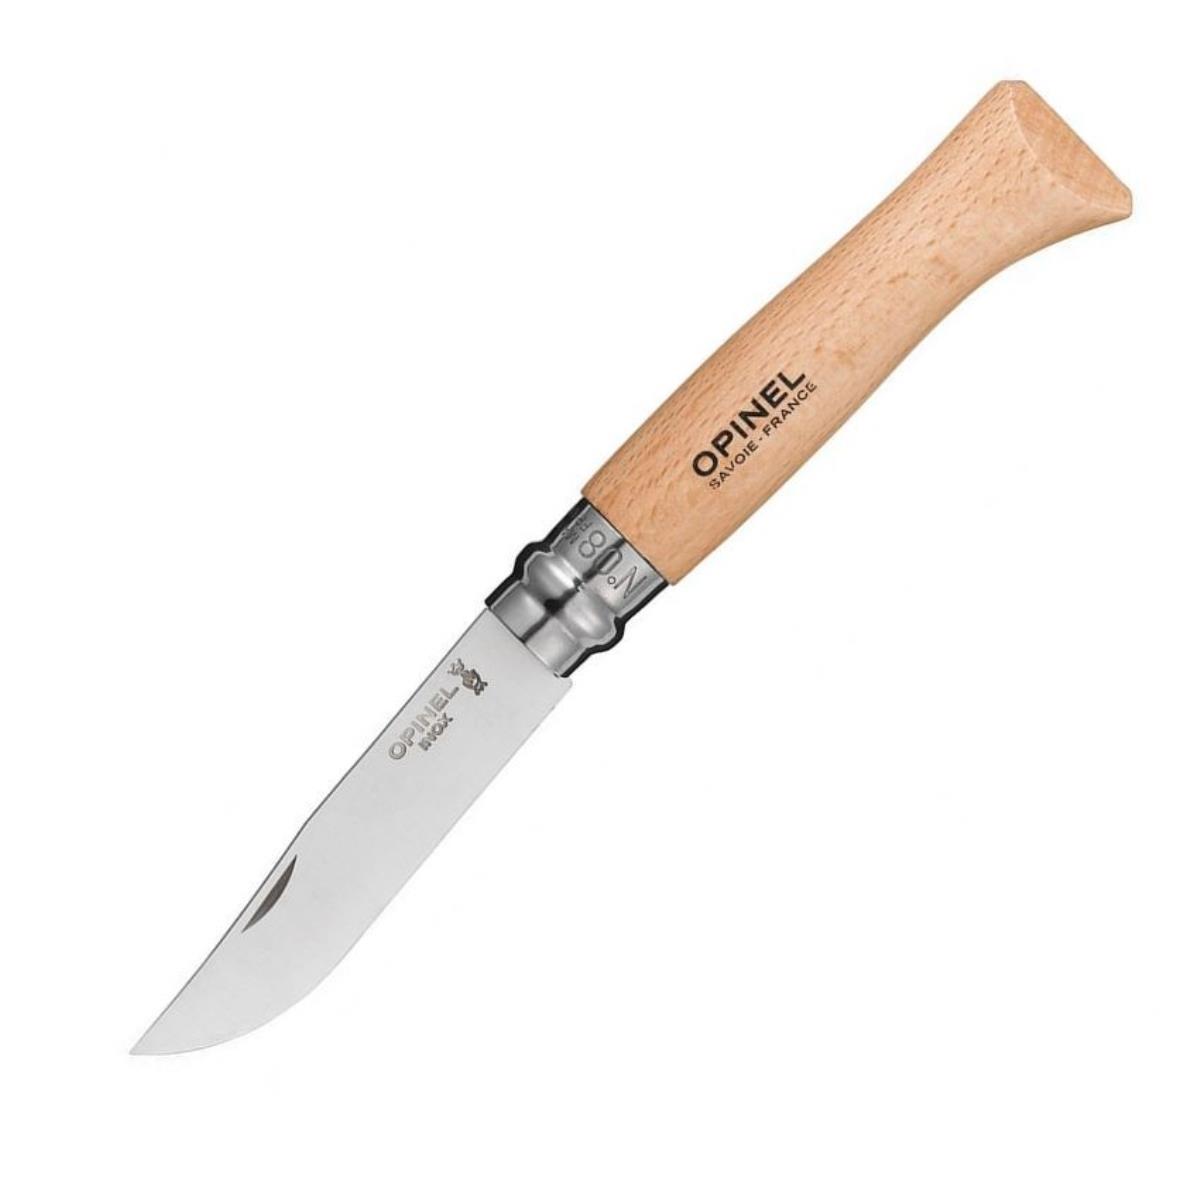 Нож №8 VRI Tradition Inox (нерж.сталь, рукоять бук, длина клинка 8,5 см) 1230805 OPINEL нож страж сталь aus 8 рукоять хаки кизляр